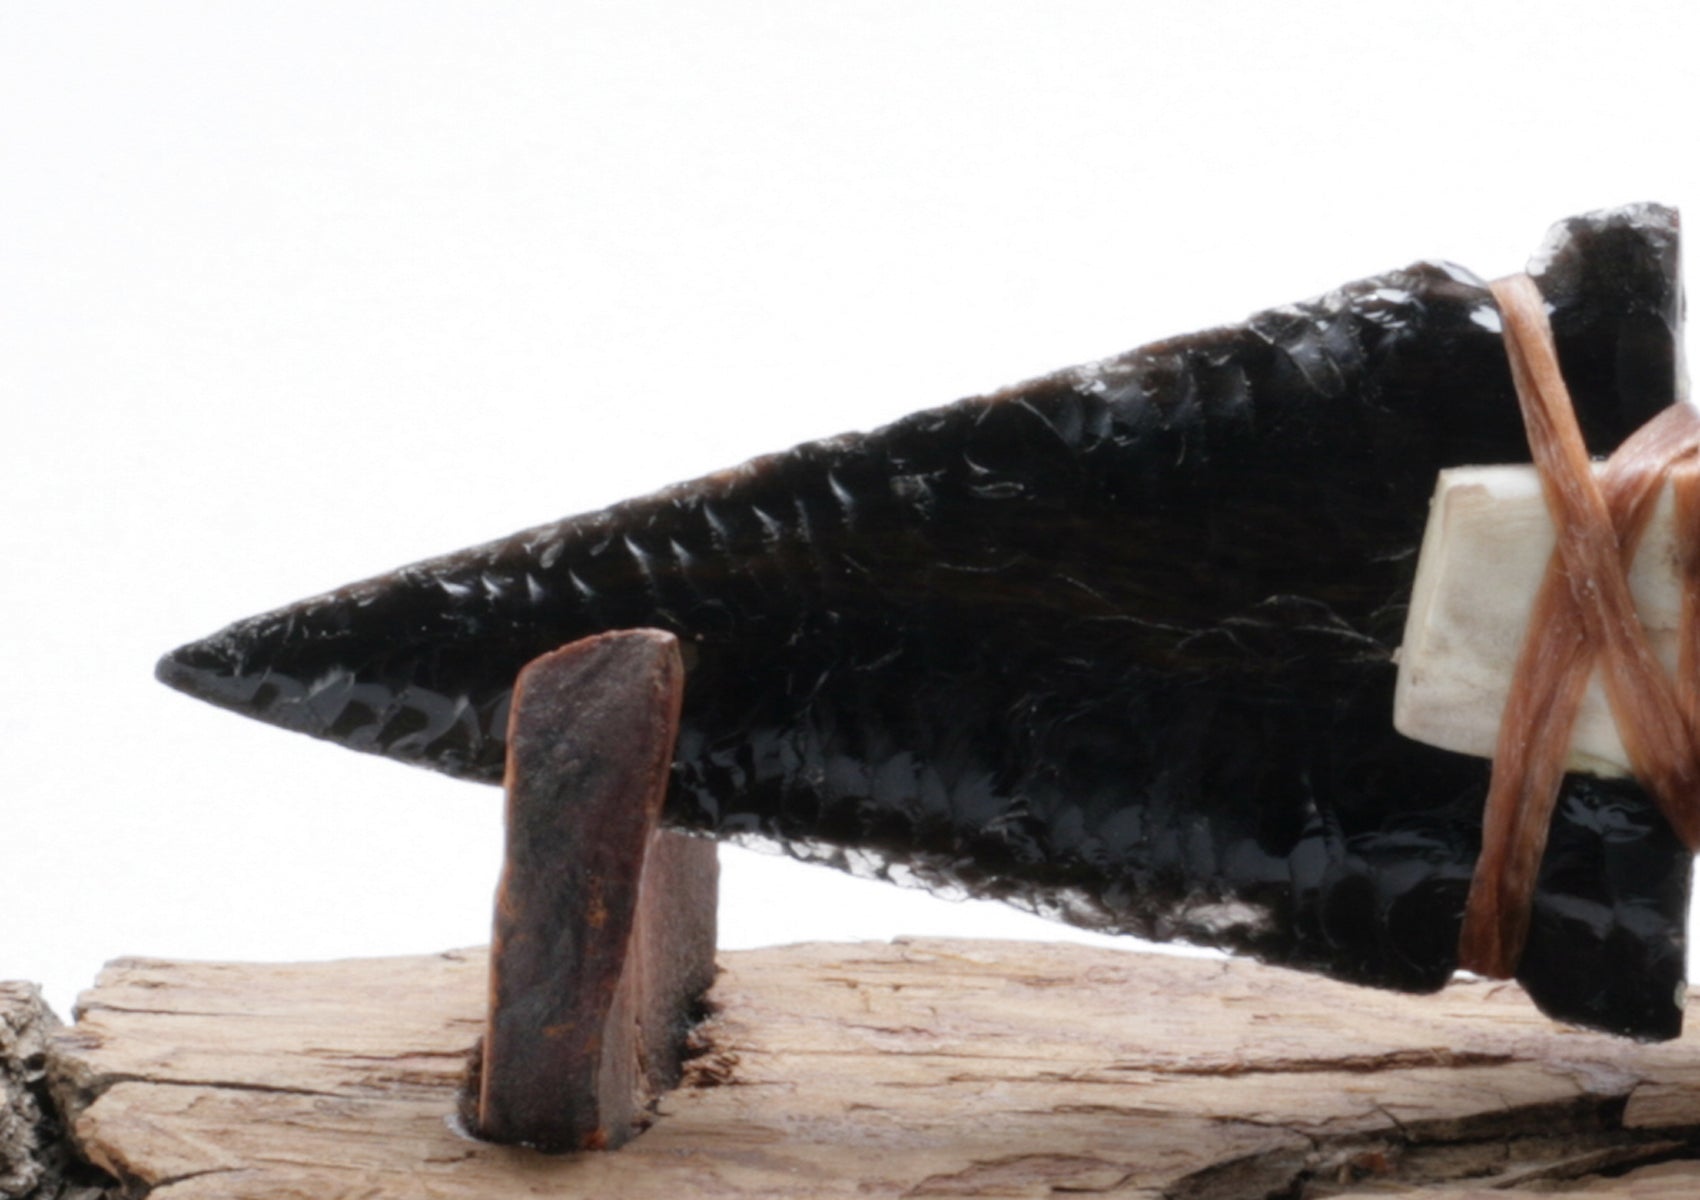 Dragonskin Obsidian Knife with Moose Deer Anter Handle